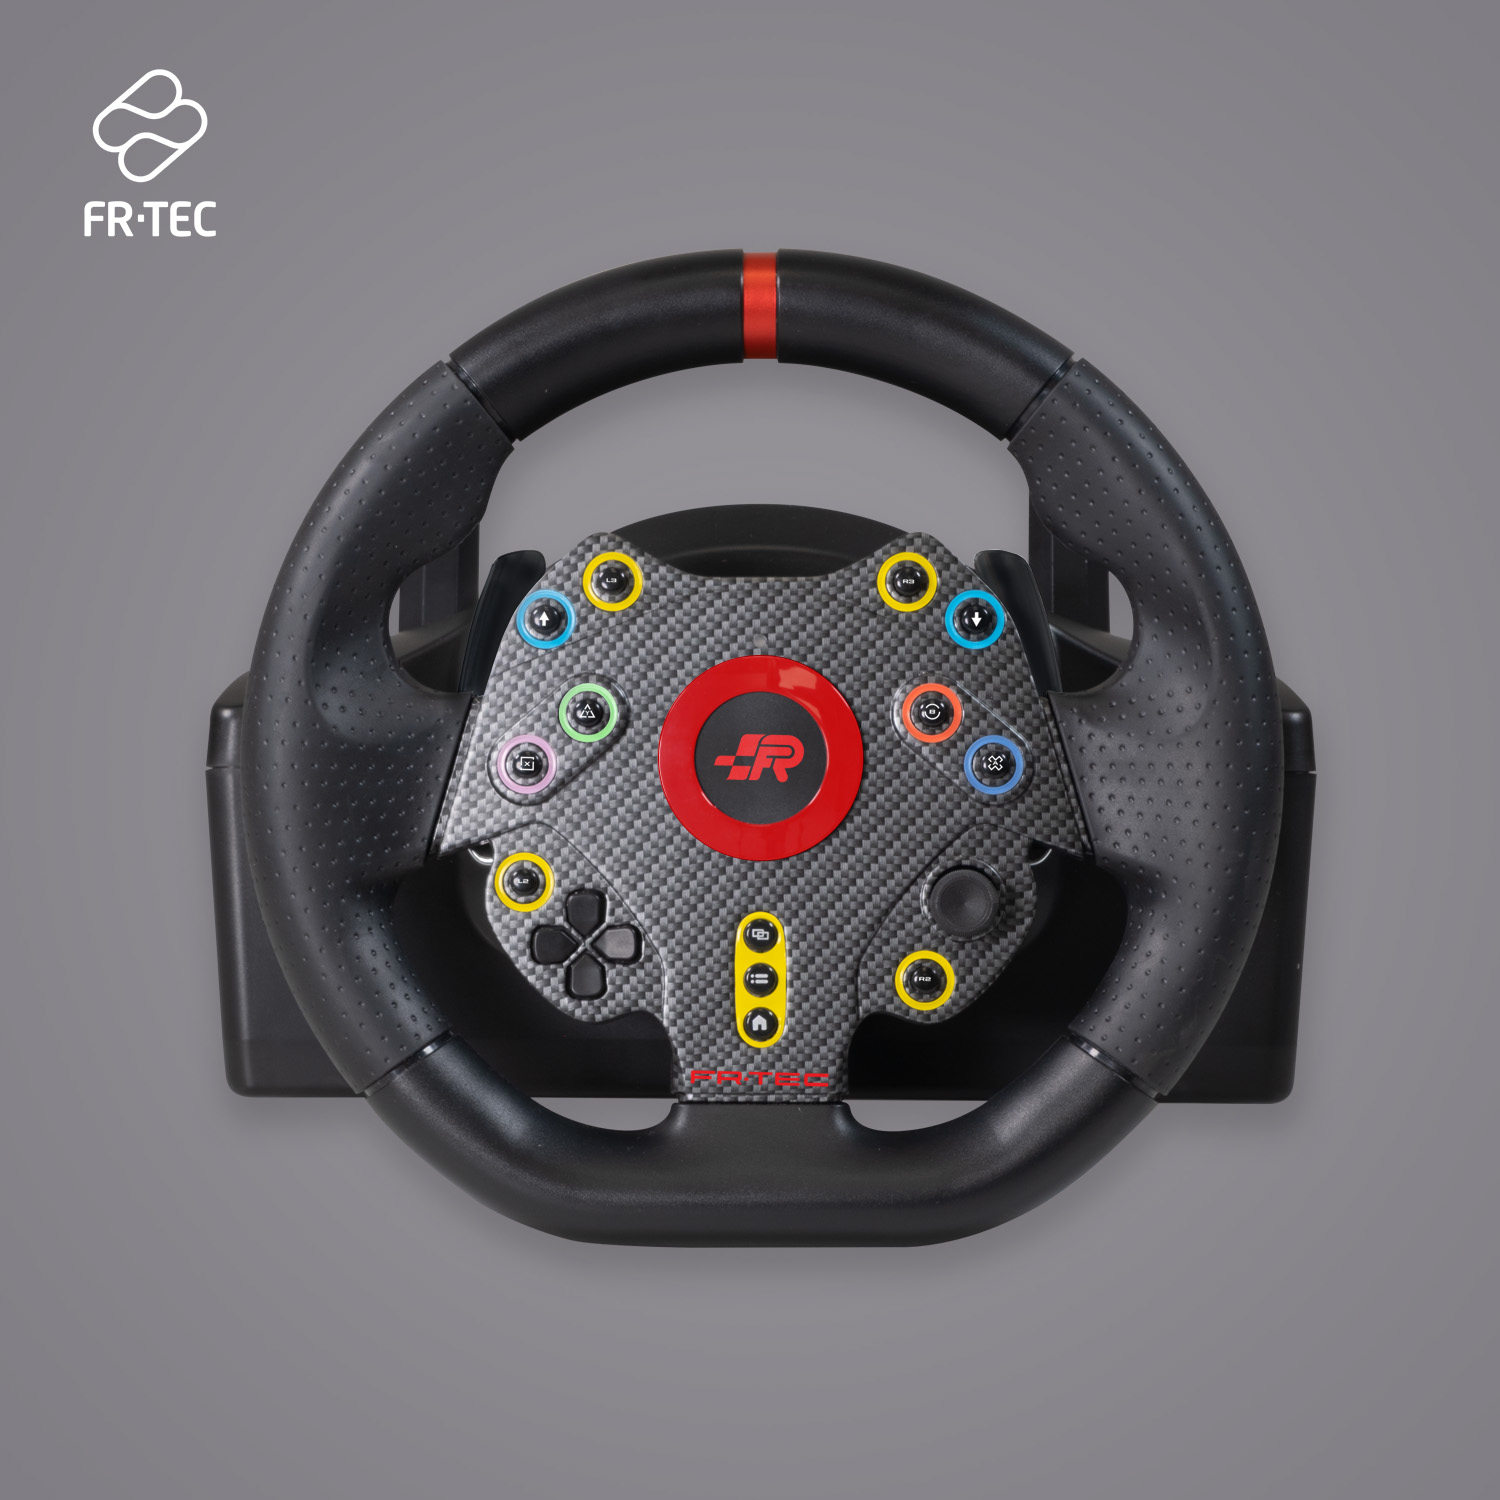 FR-TEC Grand Chelem Racing Wheel Volant de course + Pédales + Levier de vitesses - Angle de braquage 270º - Compatible avec PS4, Xbox Series X/S, One et PC - Couleur Noir